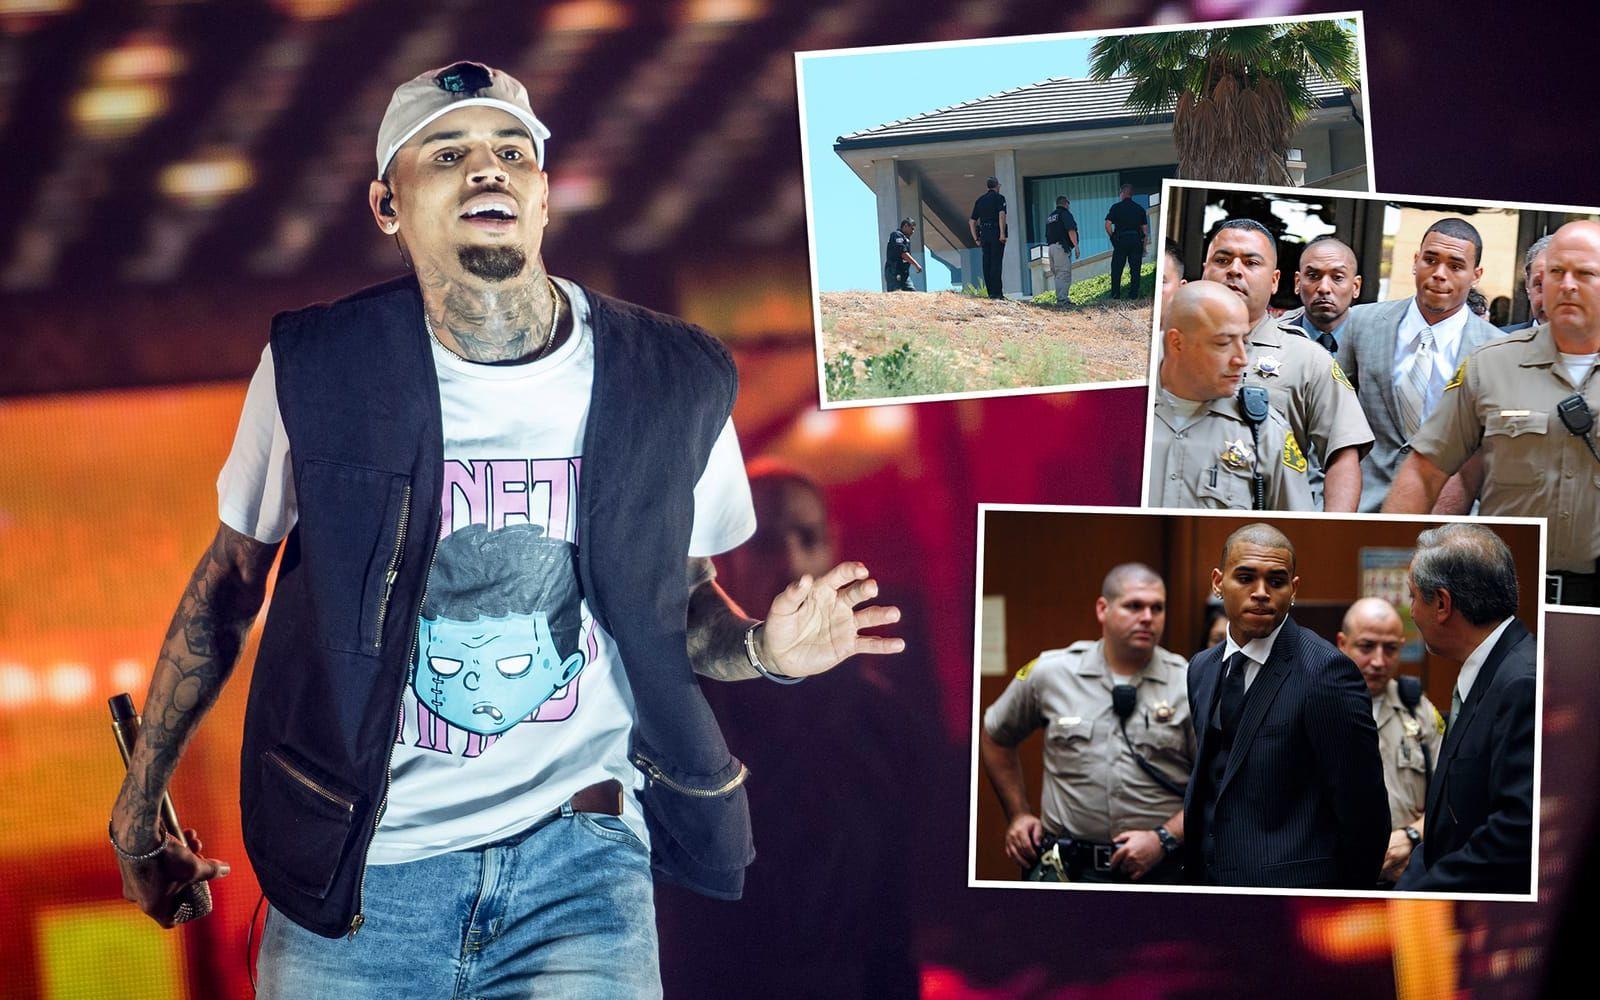 <strong>Nu:</strong> Chris Brown har släppt åtta album och även fortsatt sin skådiskarriär. Sedan 2009, då han dömdes för att ha misshandlat sin dåvarande flickvän Rihanna, har Brown hamnat i trubbel om och om igen. Han har gripits för misshandel, tvingats ta in på rehab och 2016 barrikaderade han sig i sitt hem med LA-polisen utanför dörren. Foto: Stella Pictures